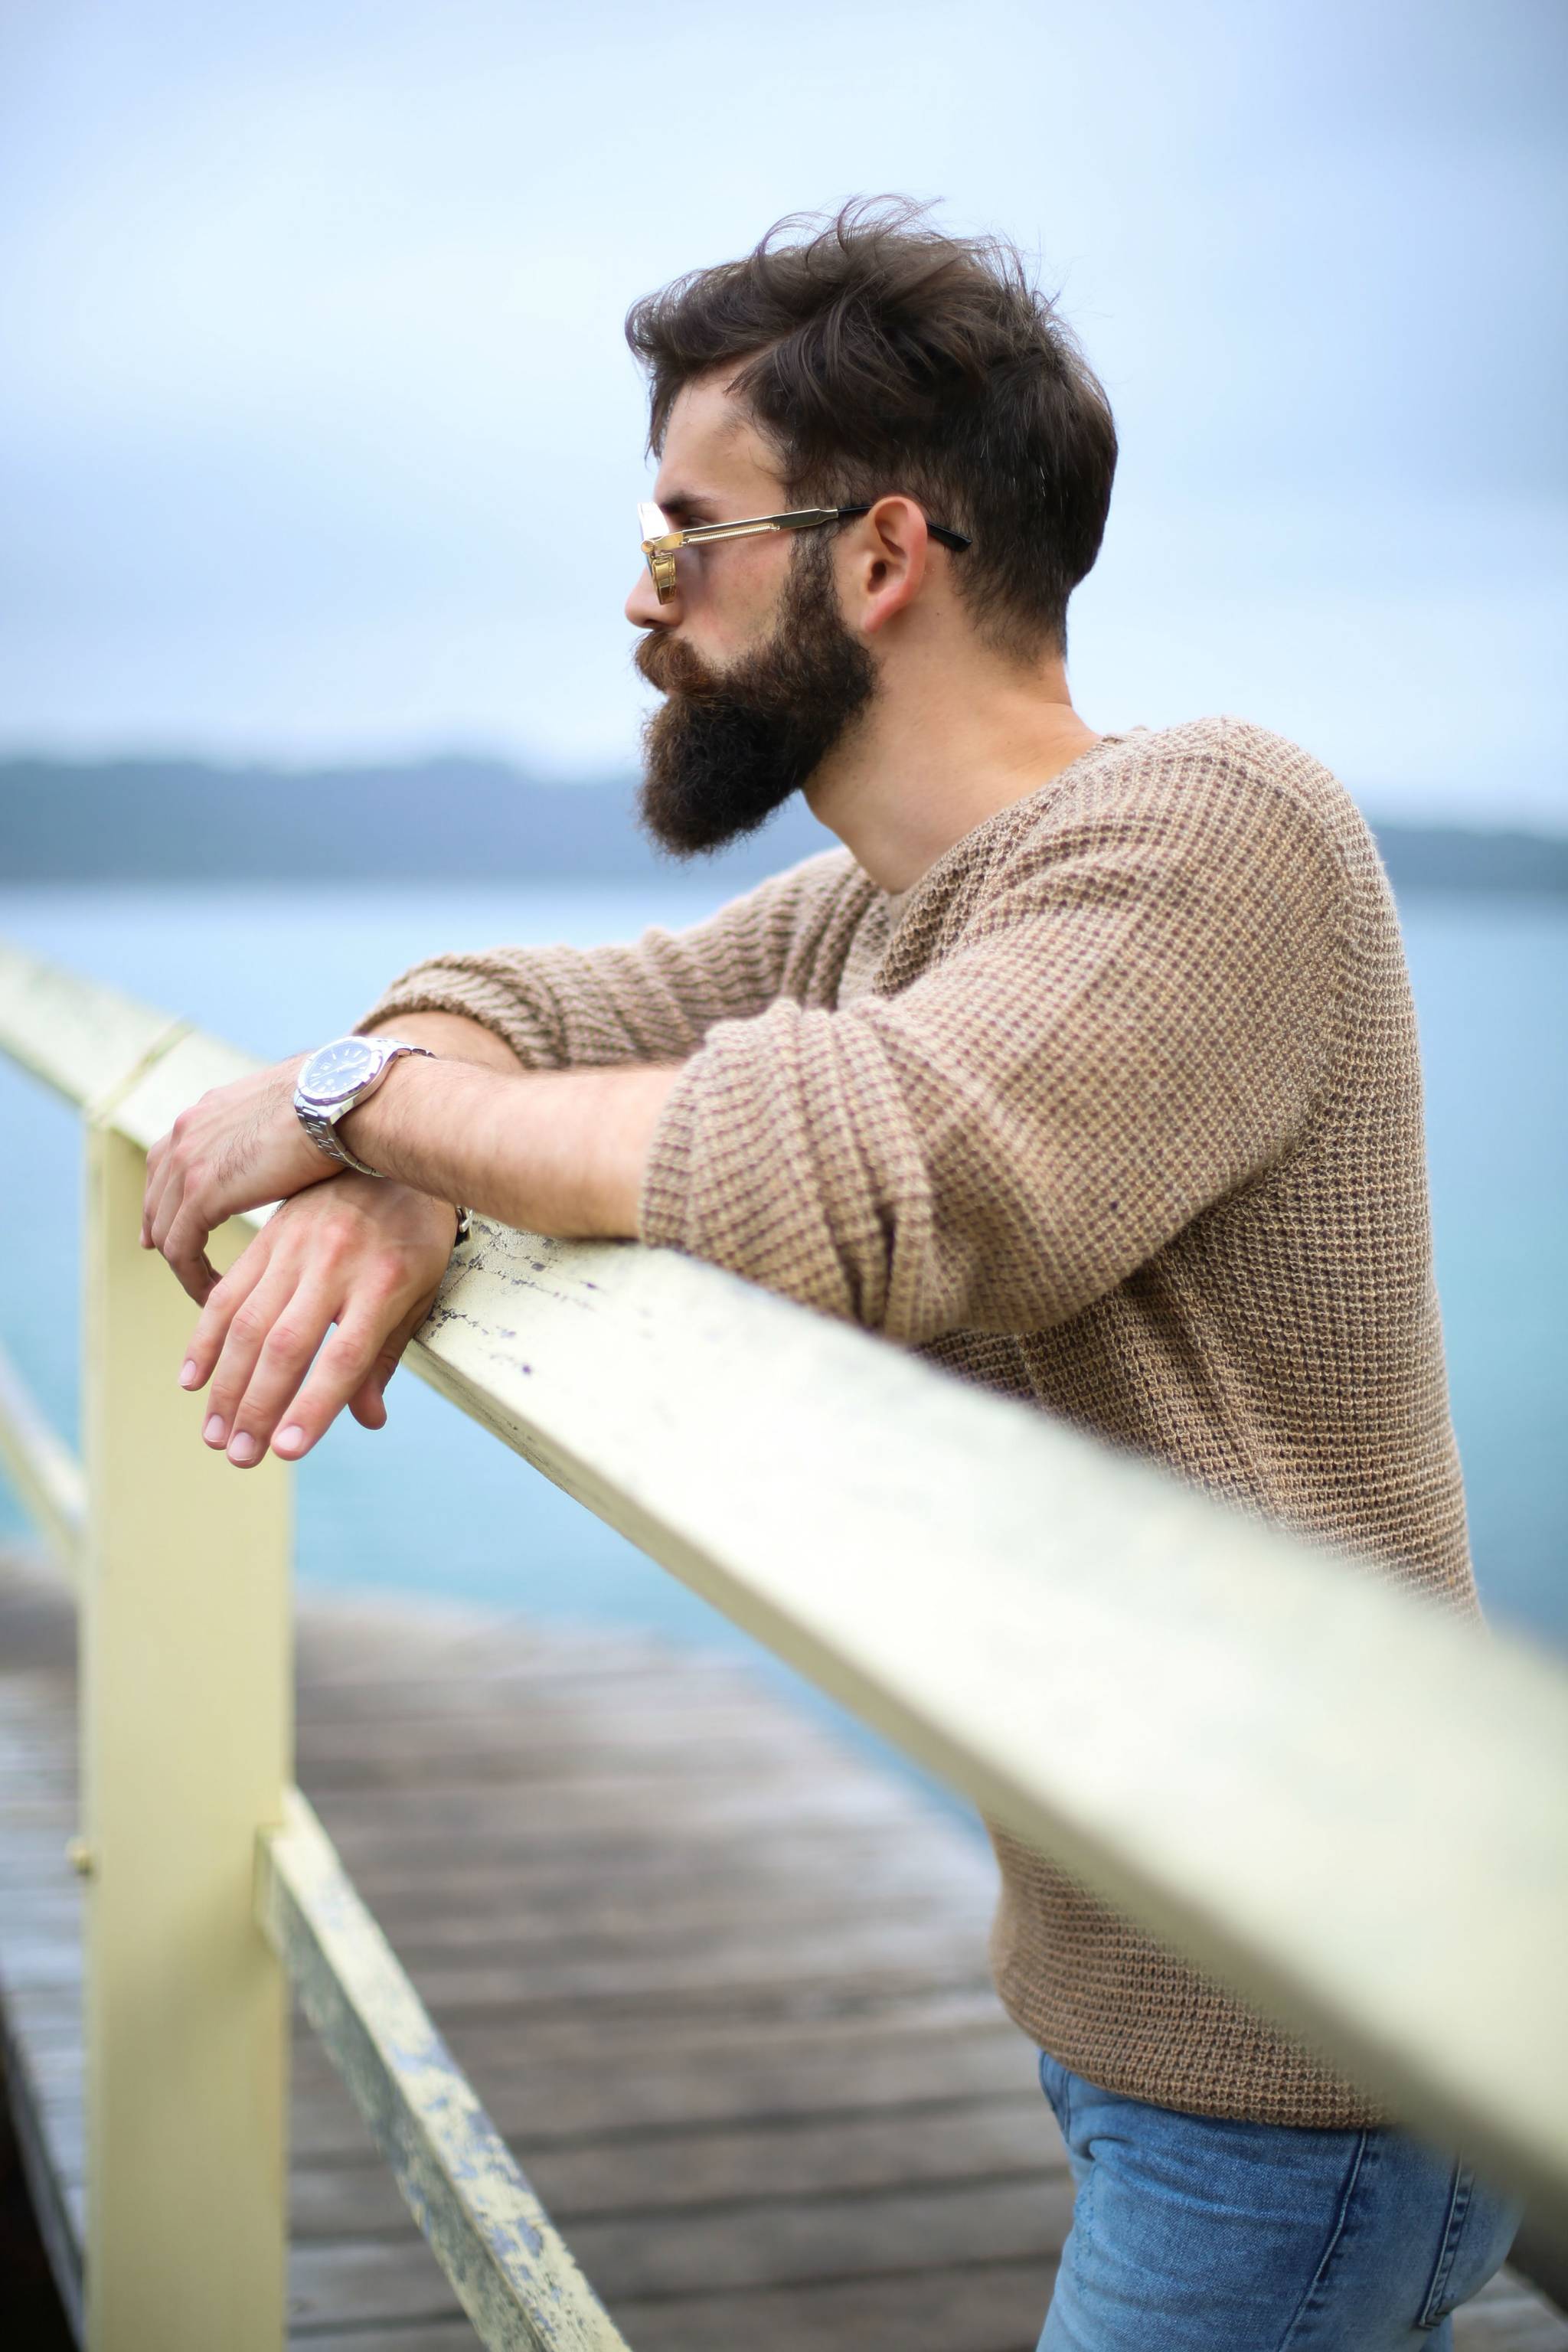 Beard Board offers bravado-free male beauty community